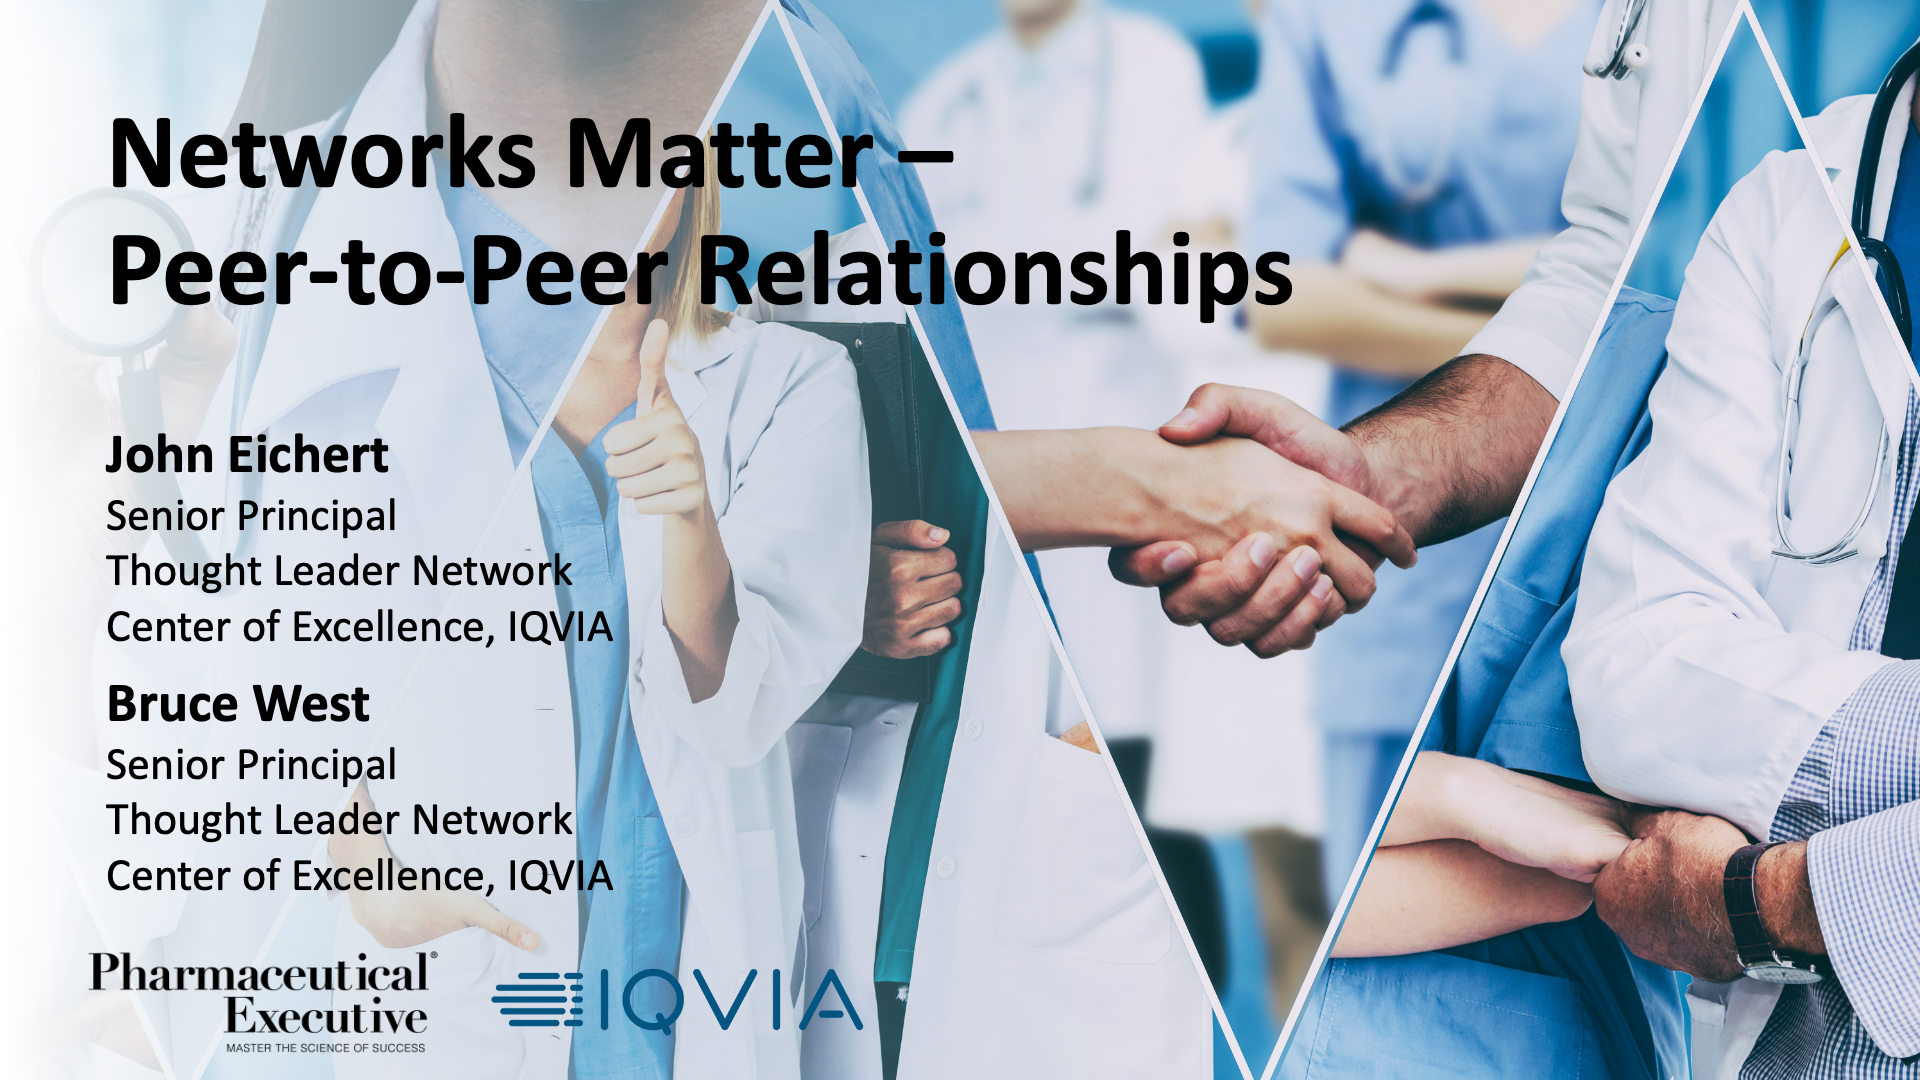 Networks Matter – Peer-to-Peer Relationships